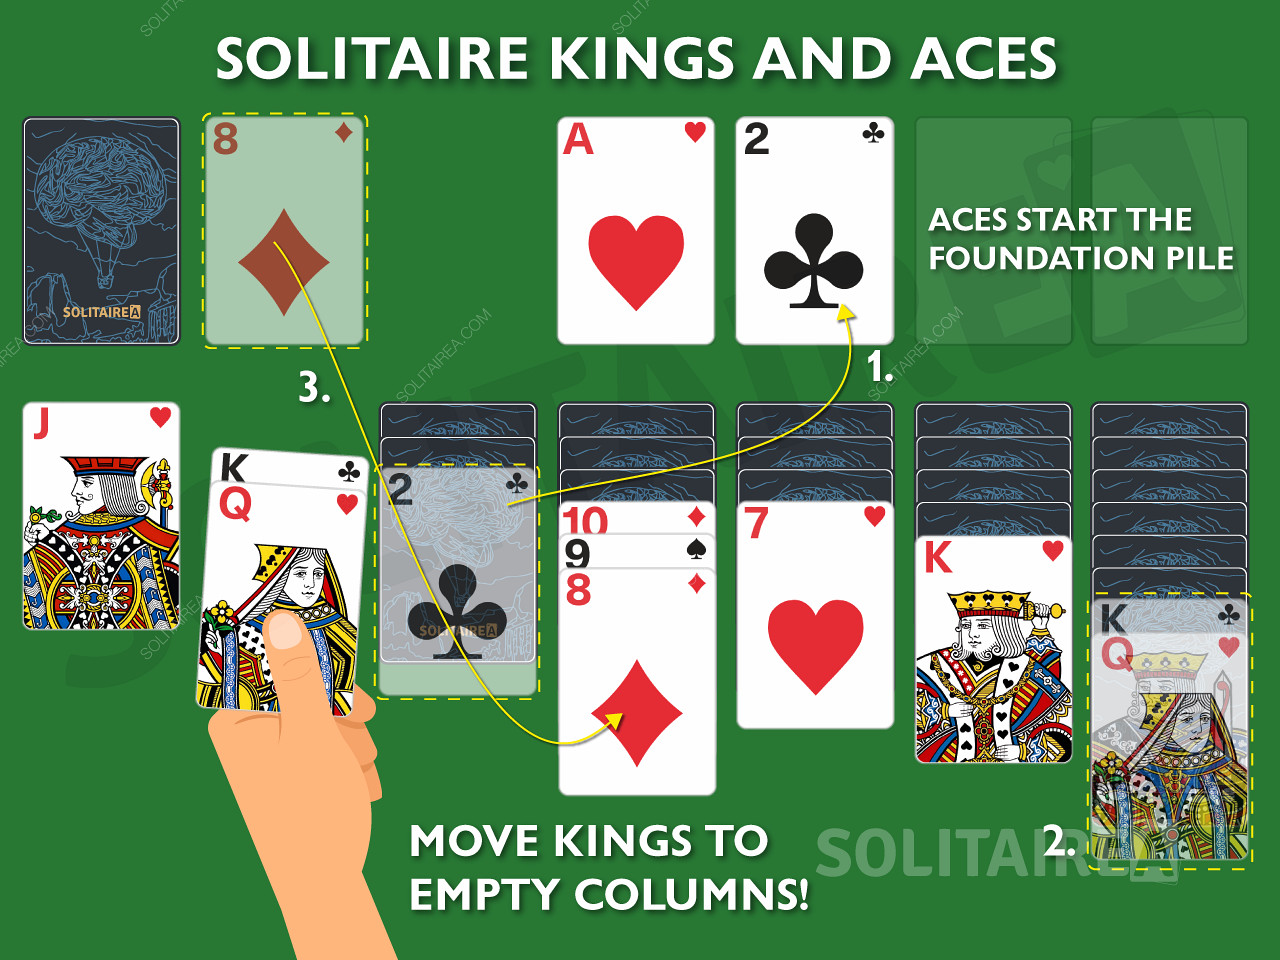 Kungar och ess är viktiga kort i Solitaire eftersom de tillåter unika drag.